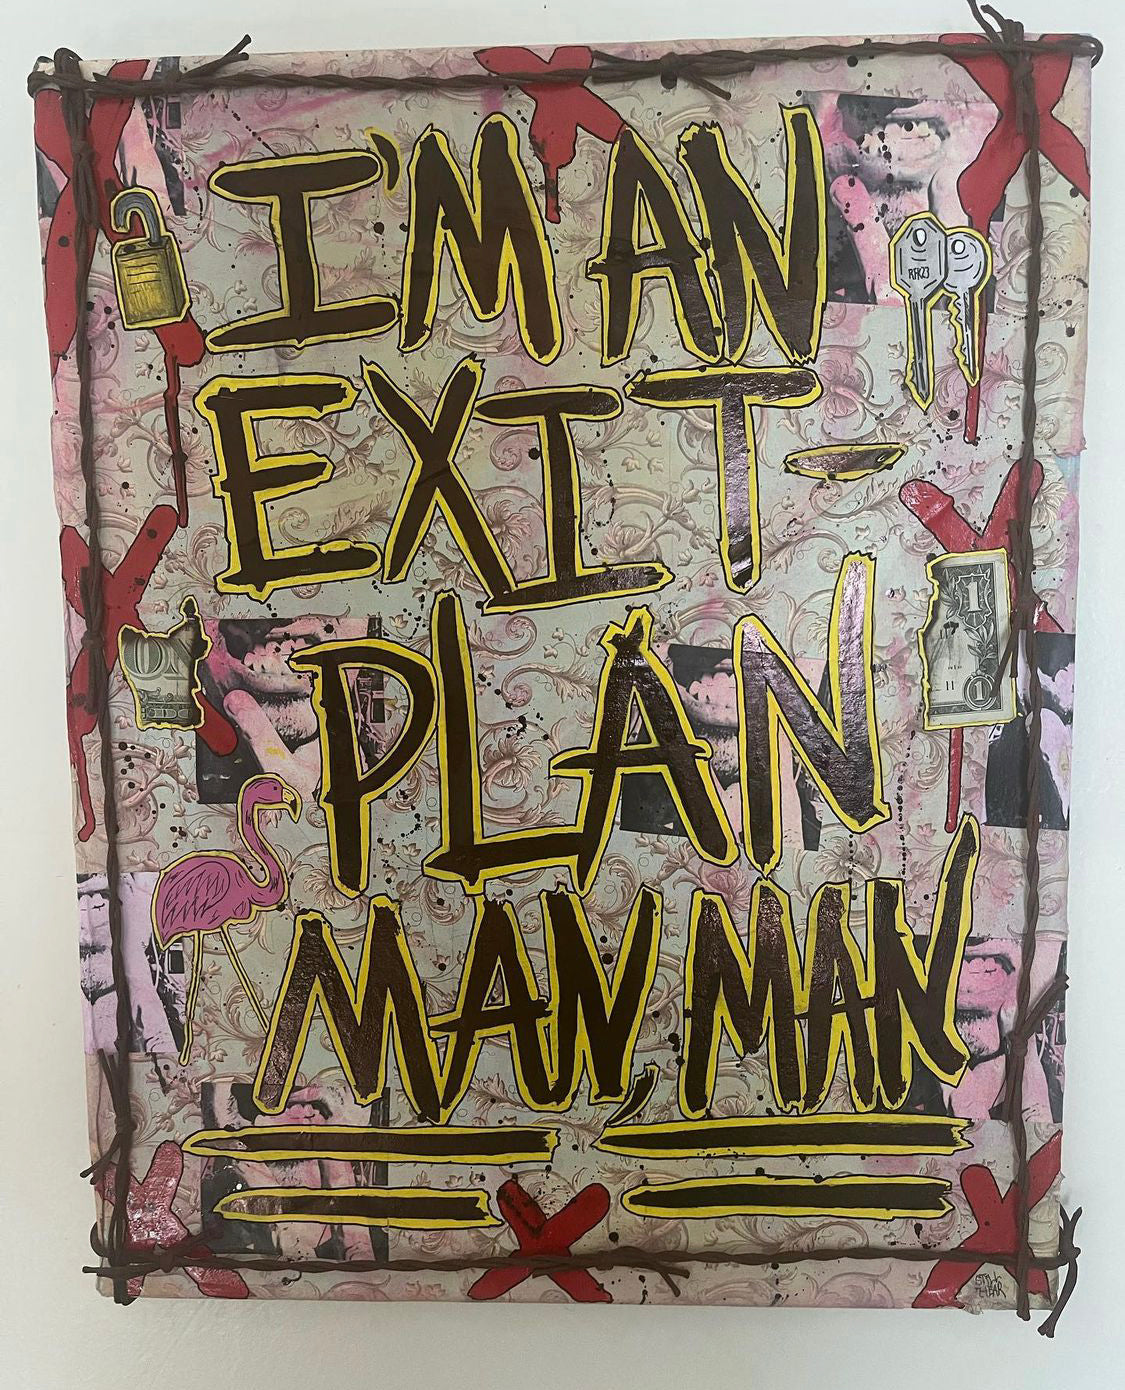 Still Hear "Exit Plan Man" (2022)